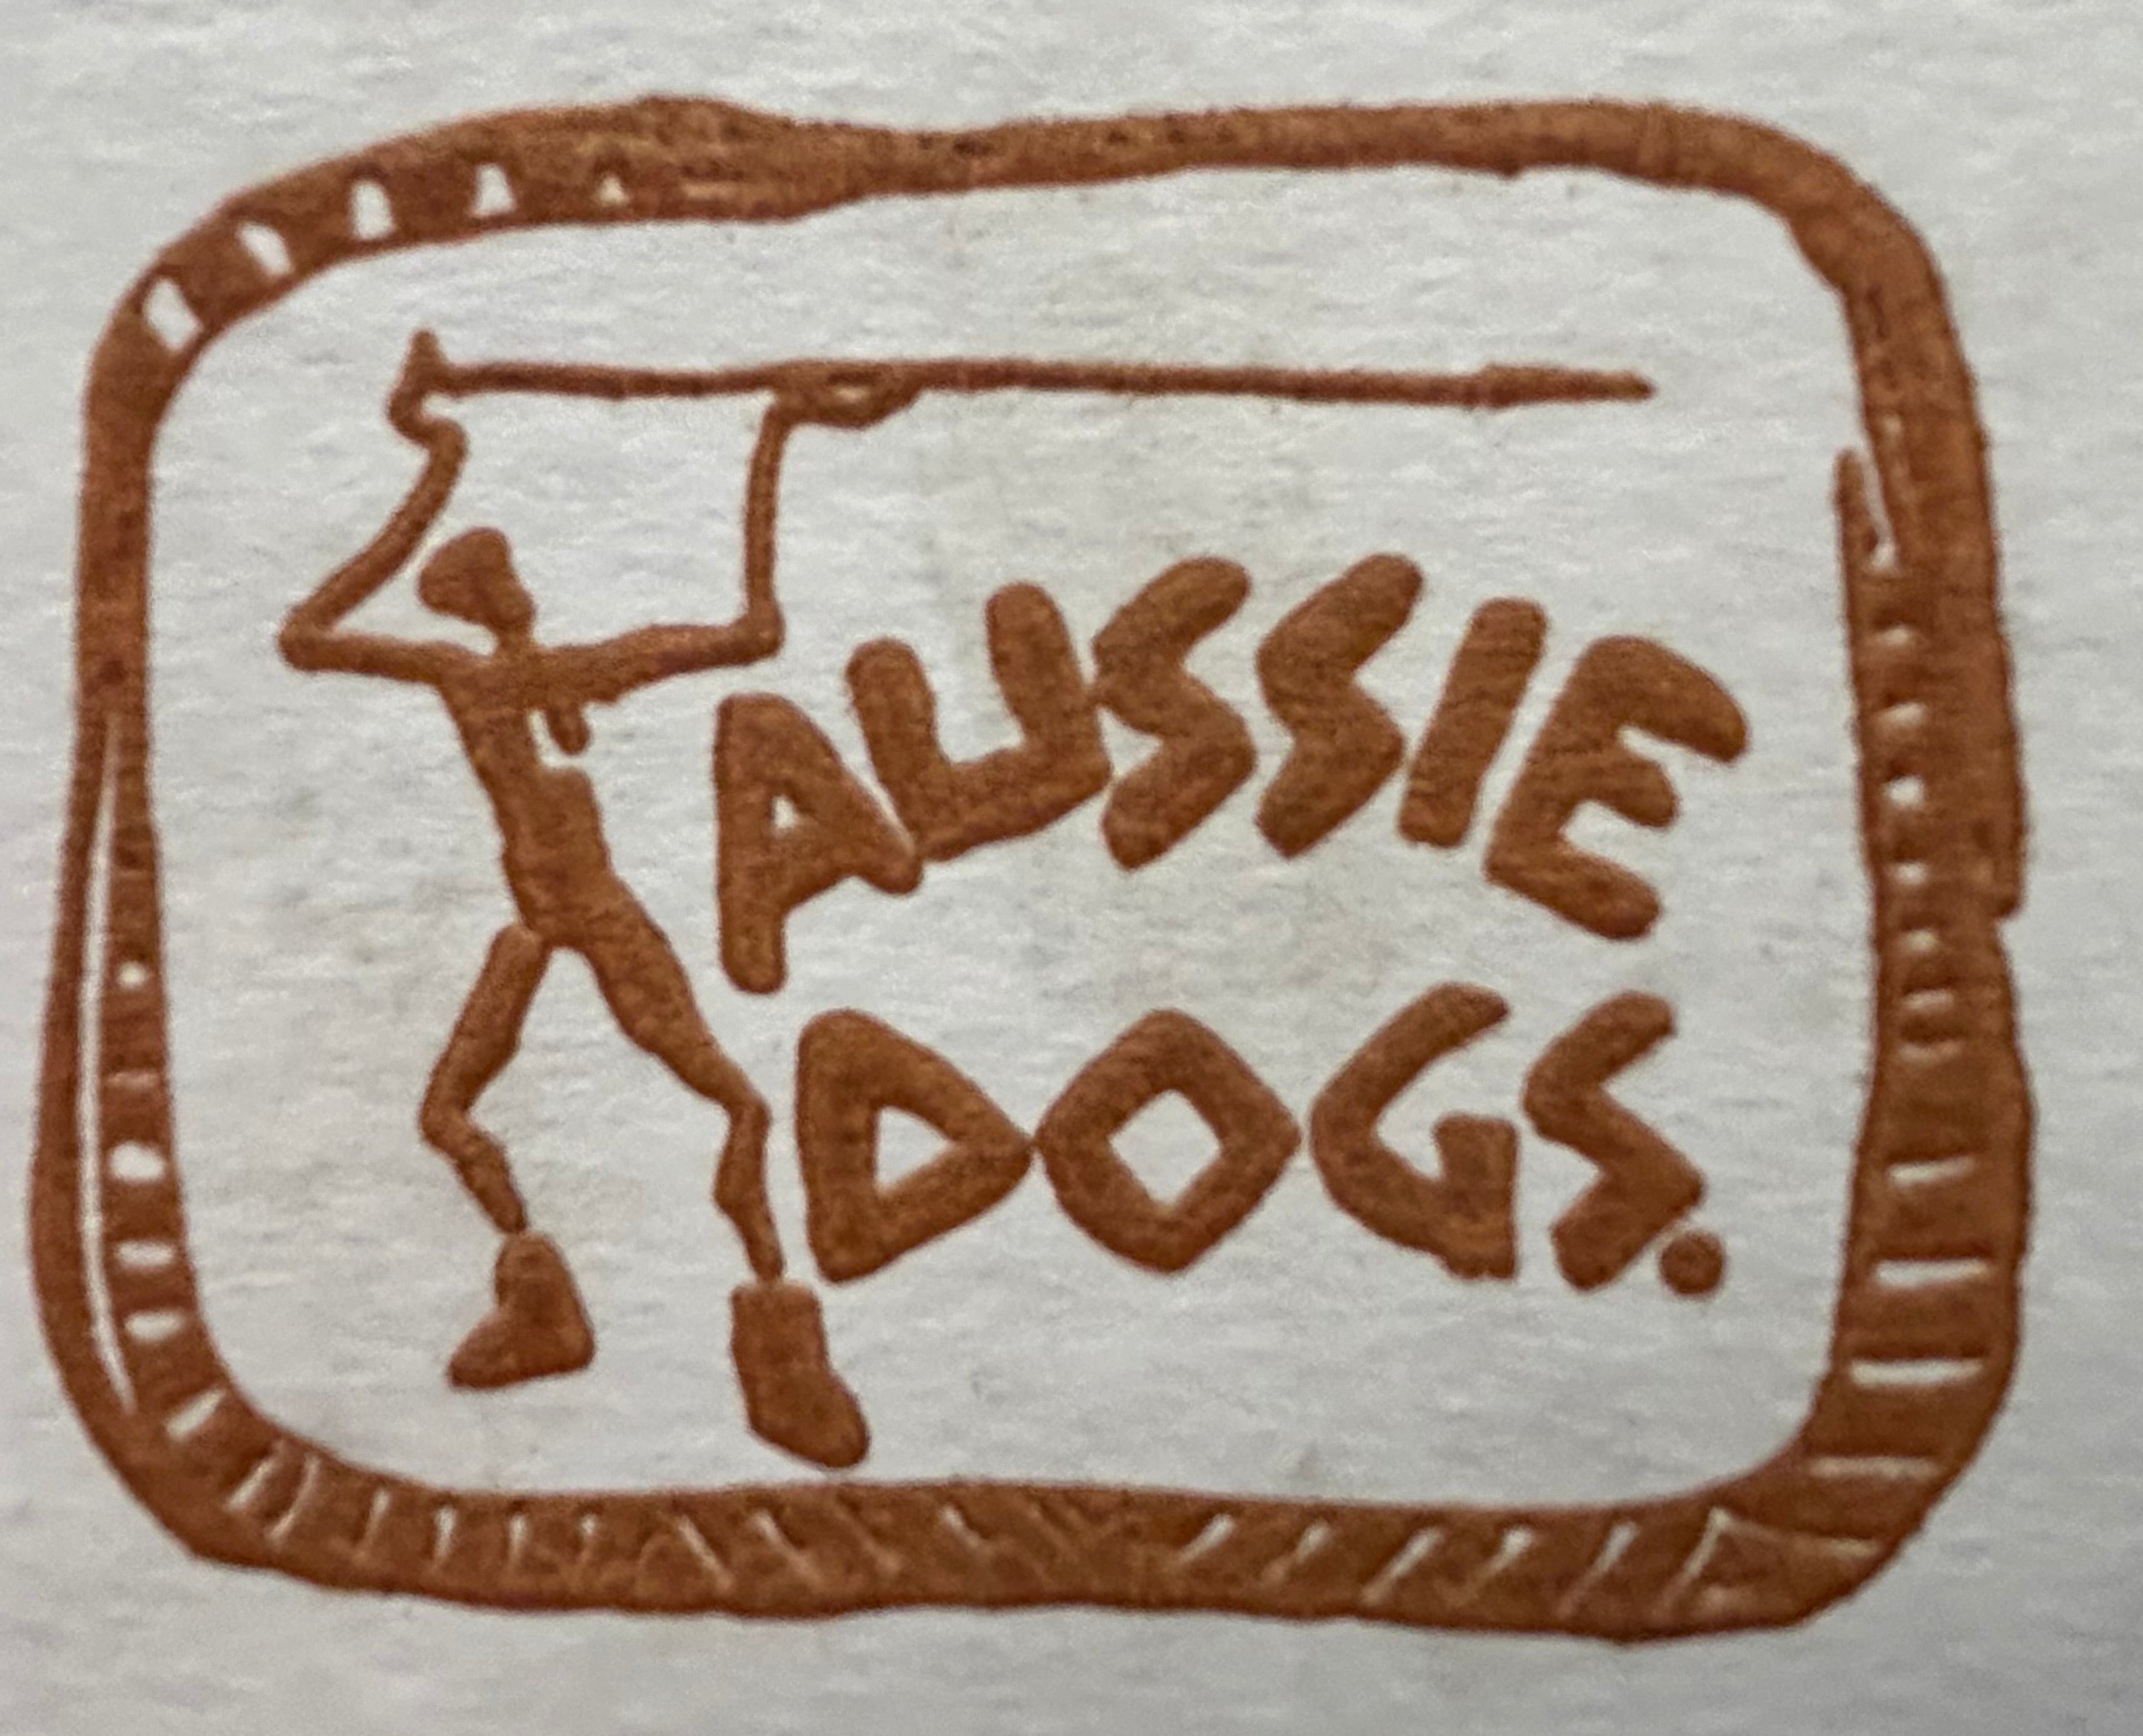 Aussie dogs - Pasadena Sole